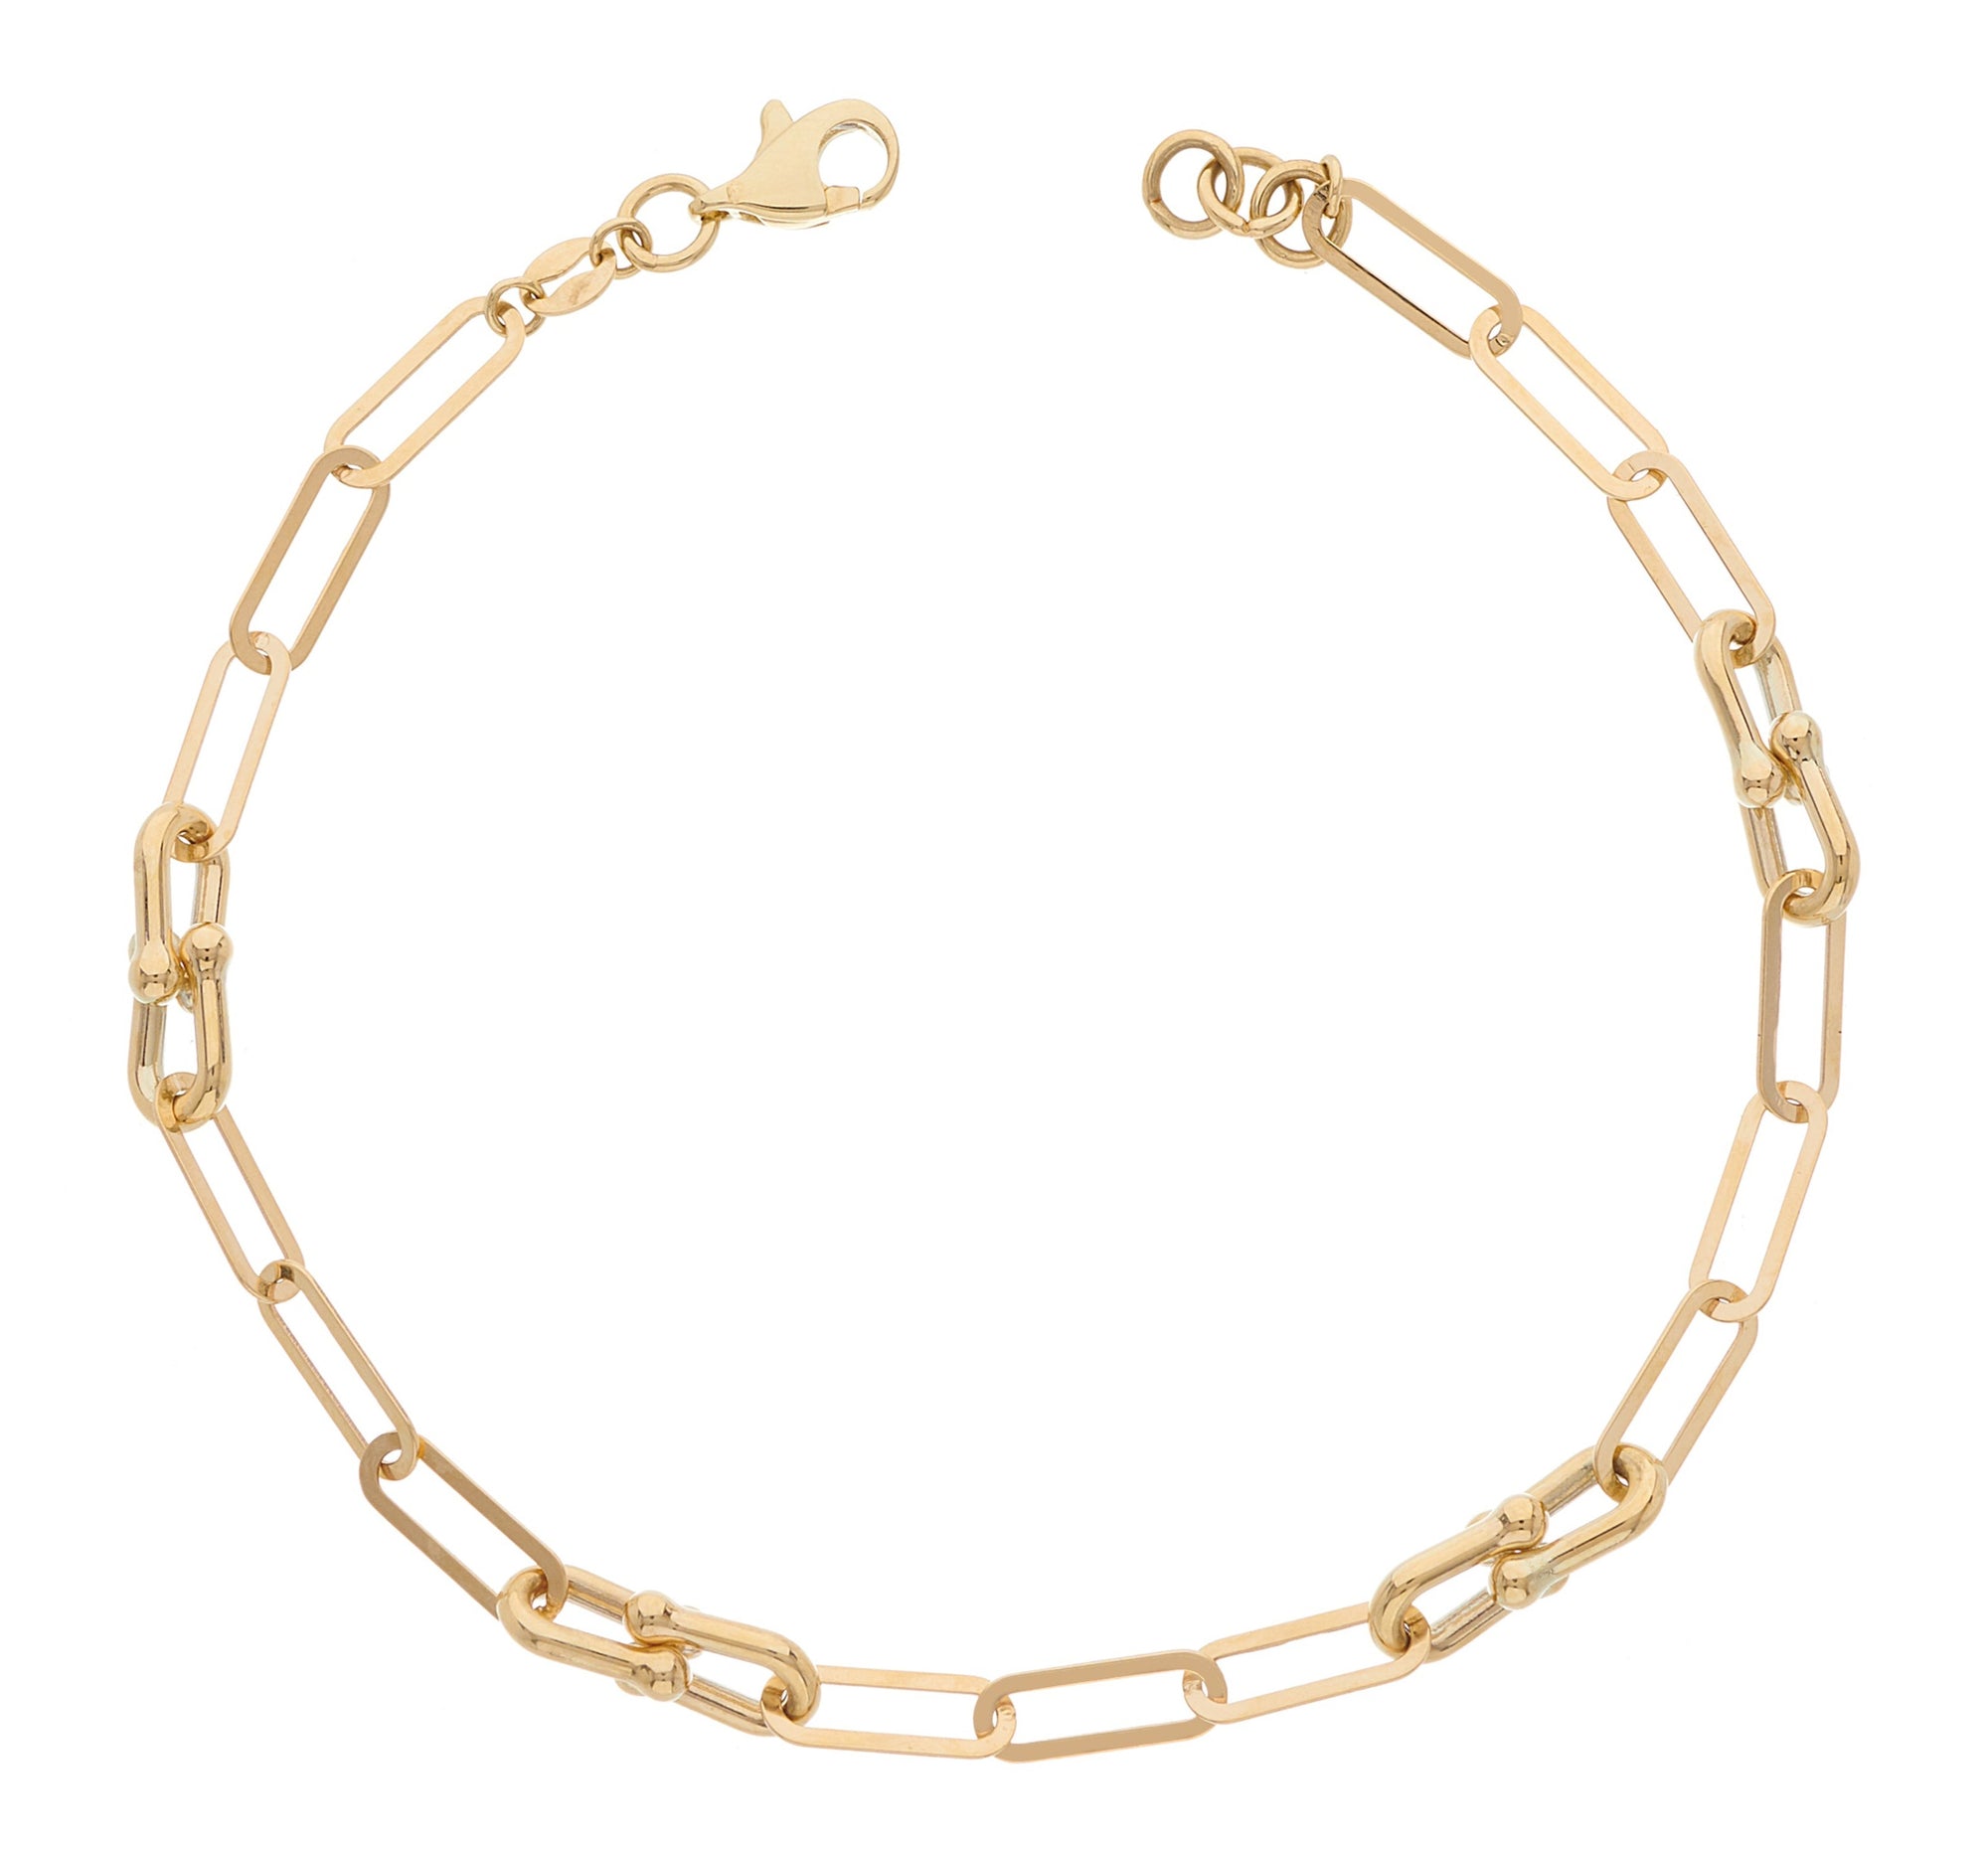 9ct gold fancy chain link bracelet